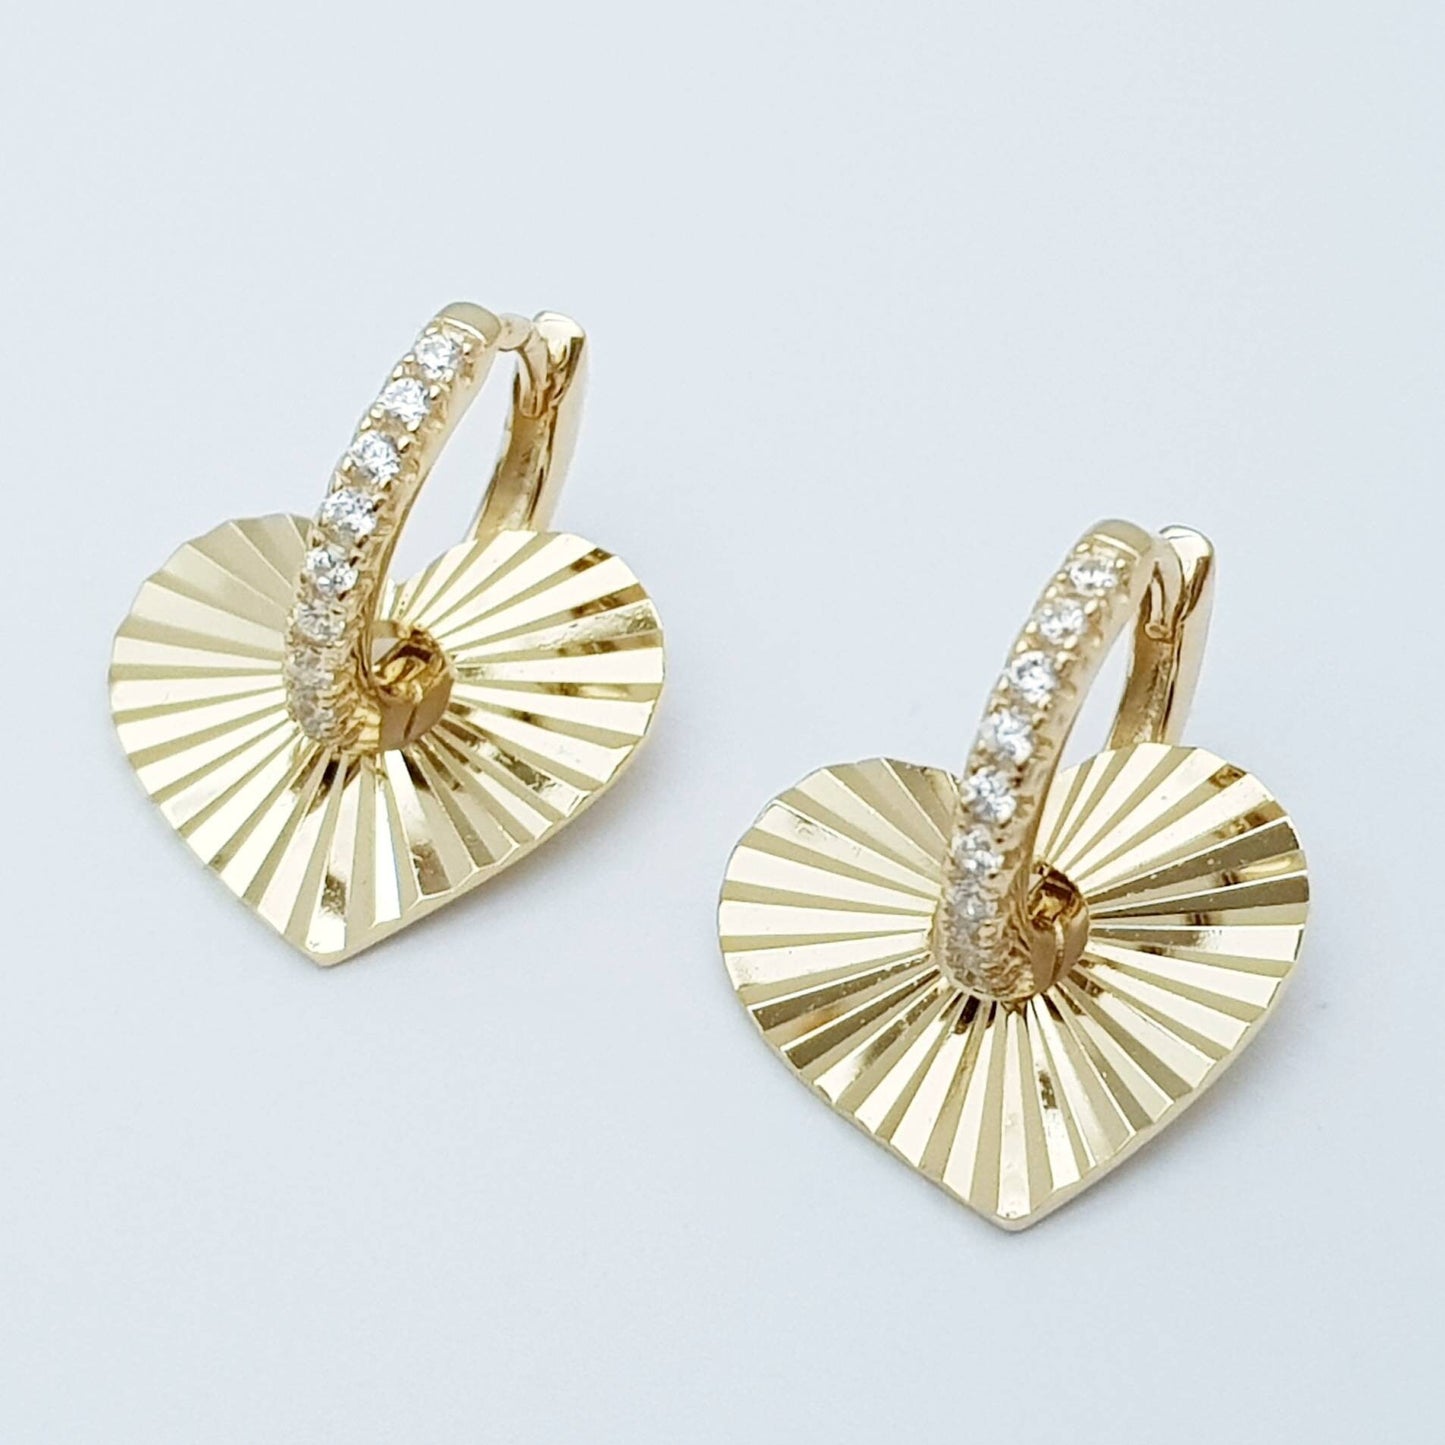 Two earrings in one, Mini hoop earrings, with removable heart charm, Small cz hoop earrings